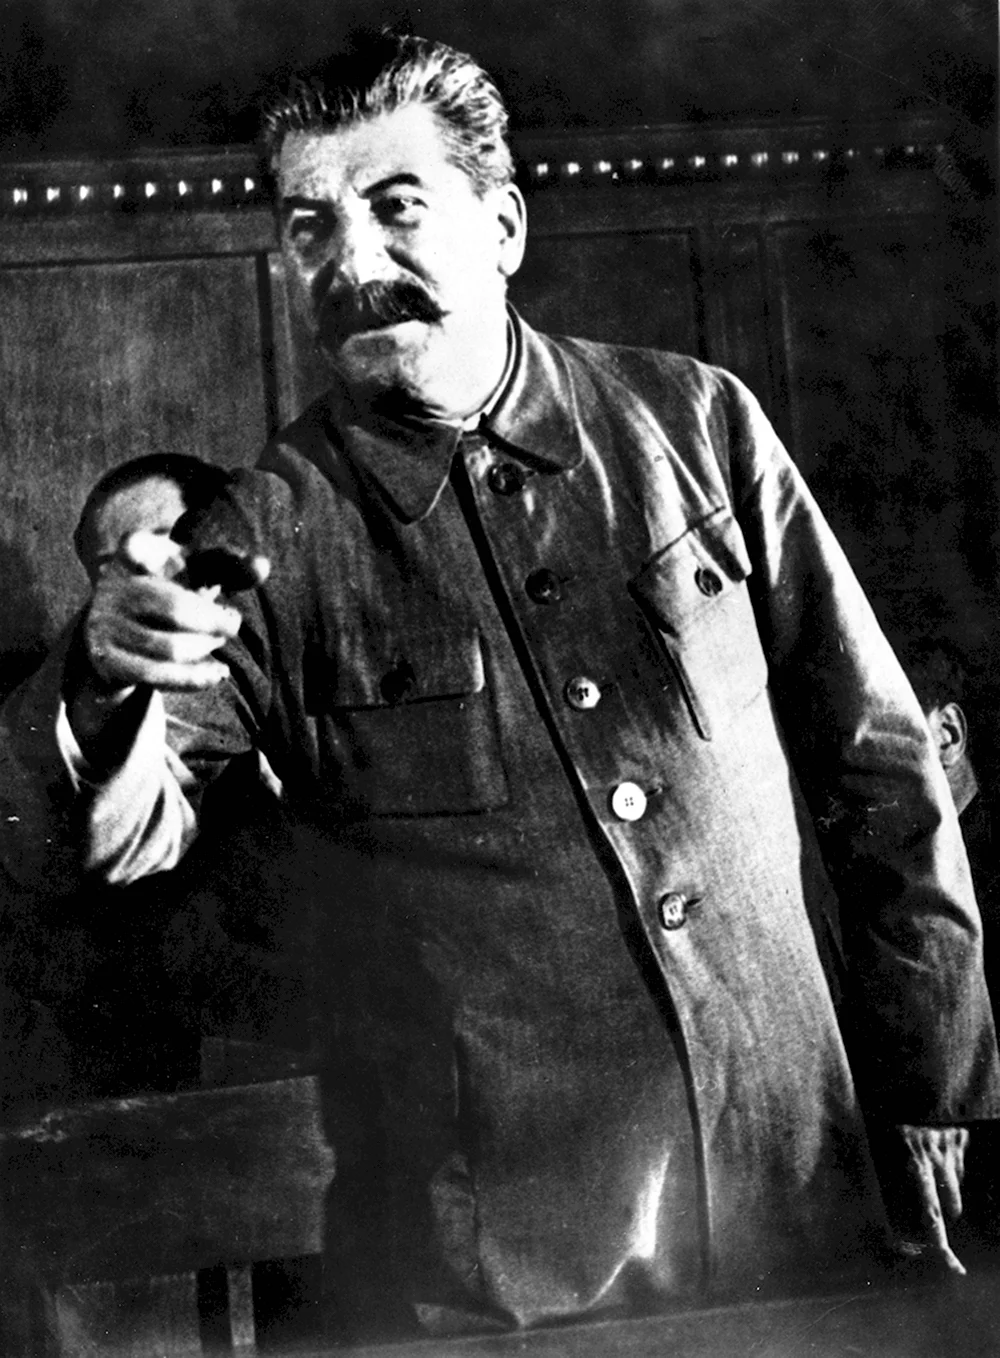 Сталин Рябой